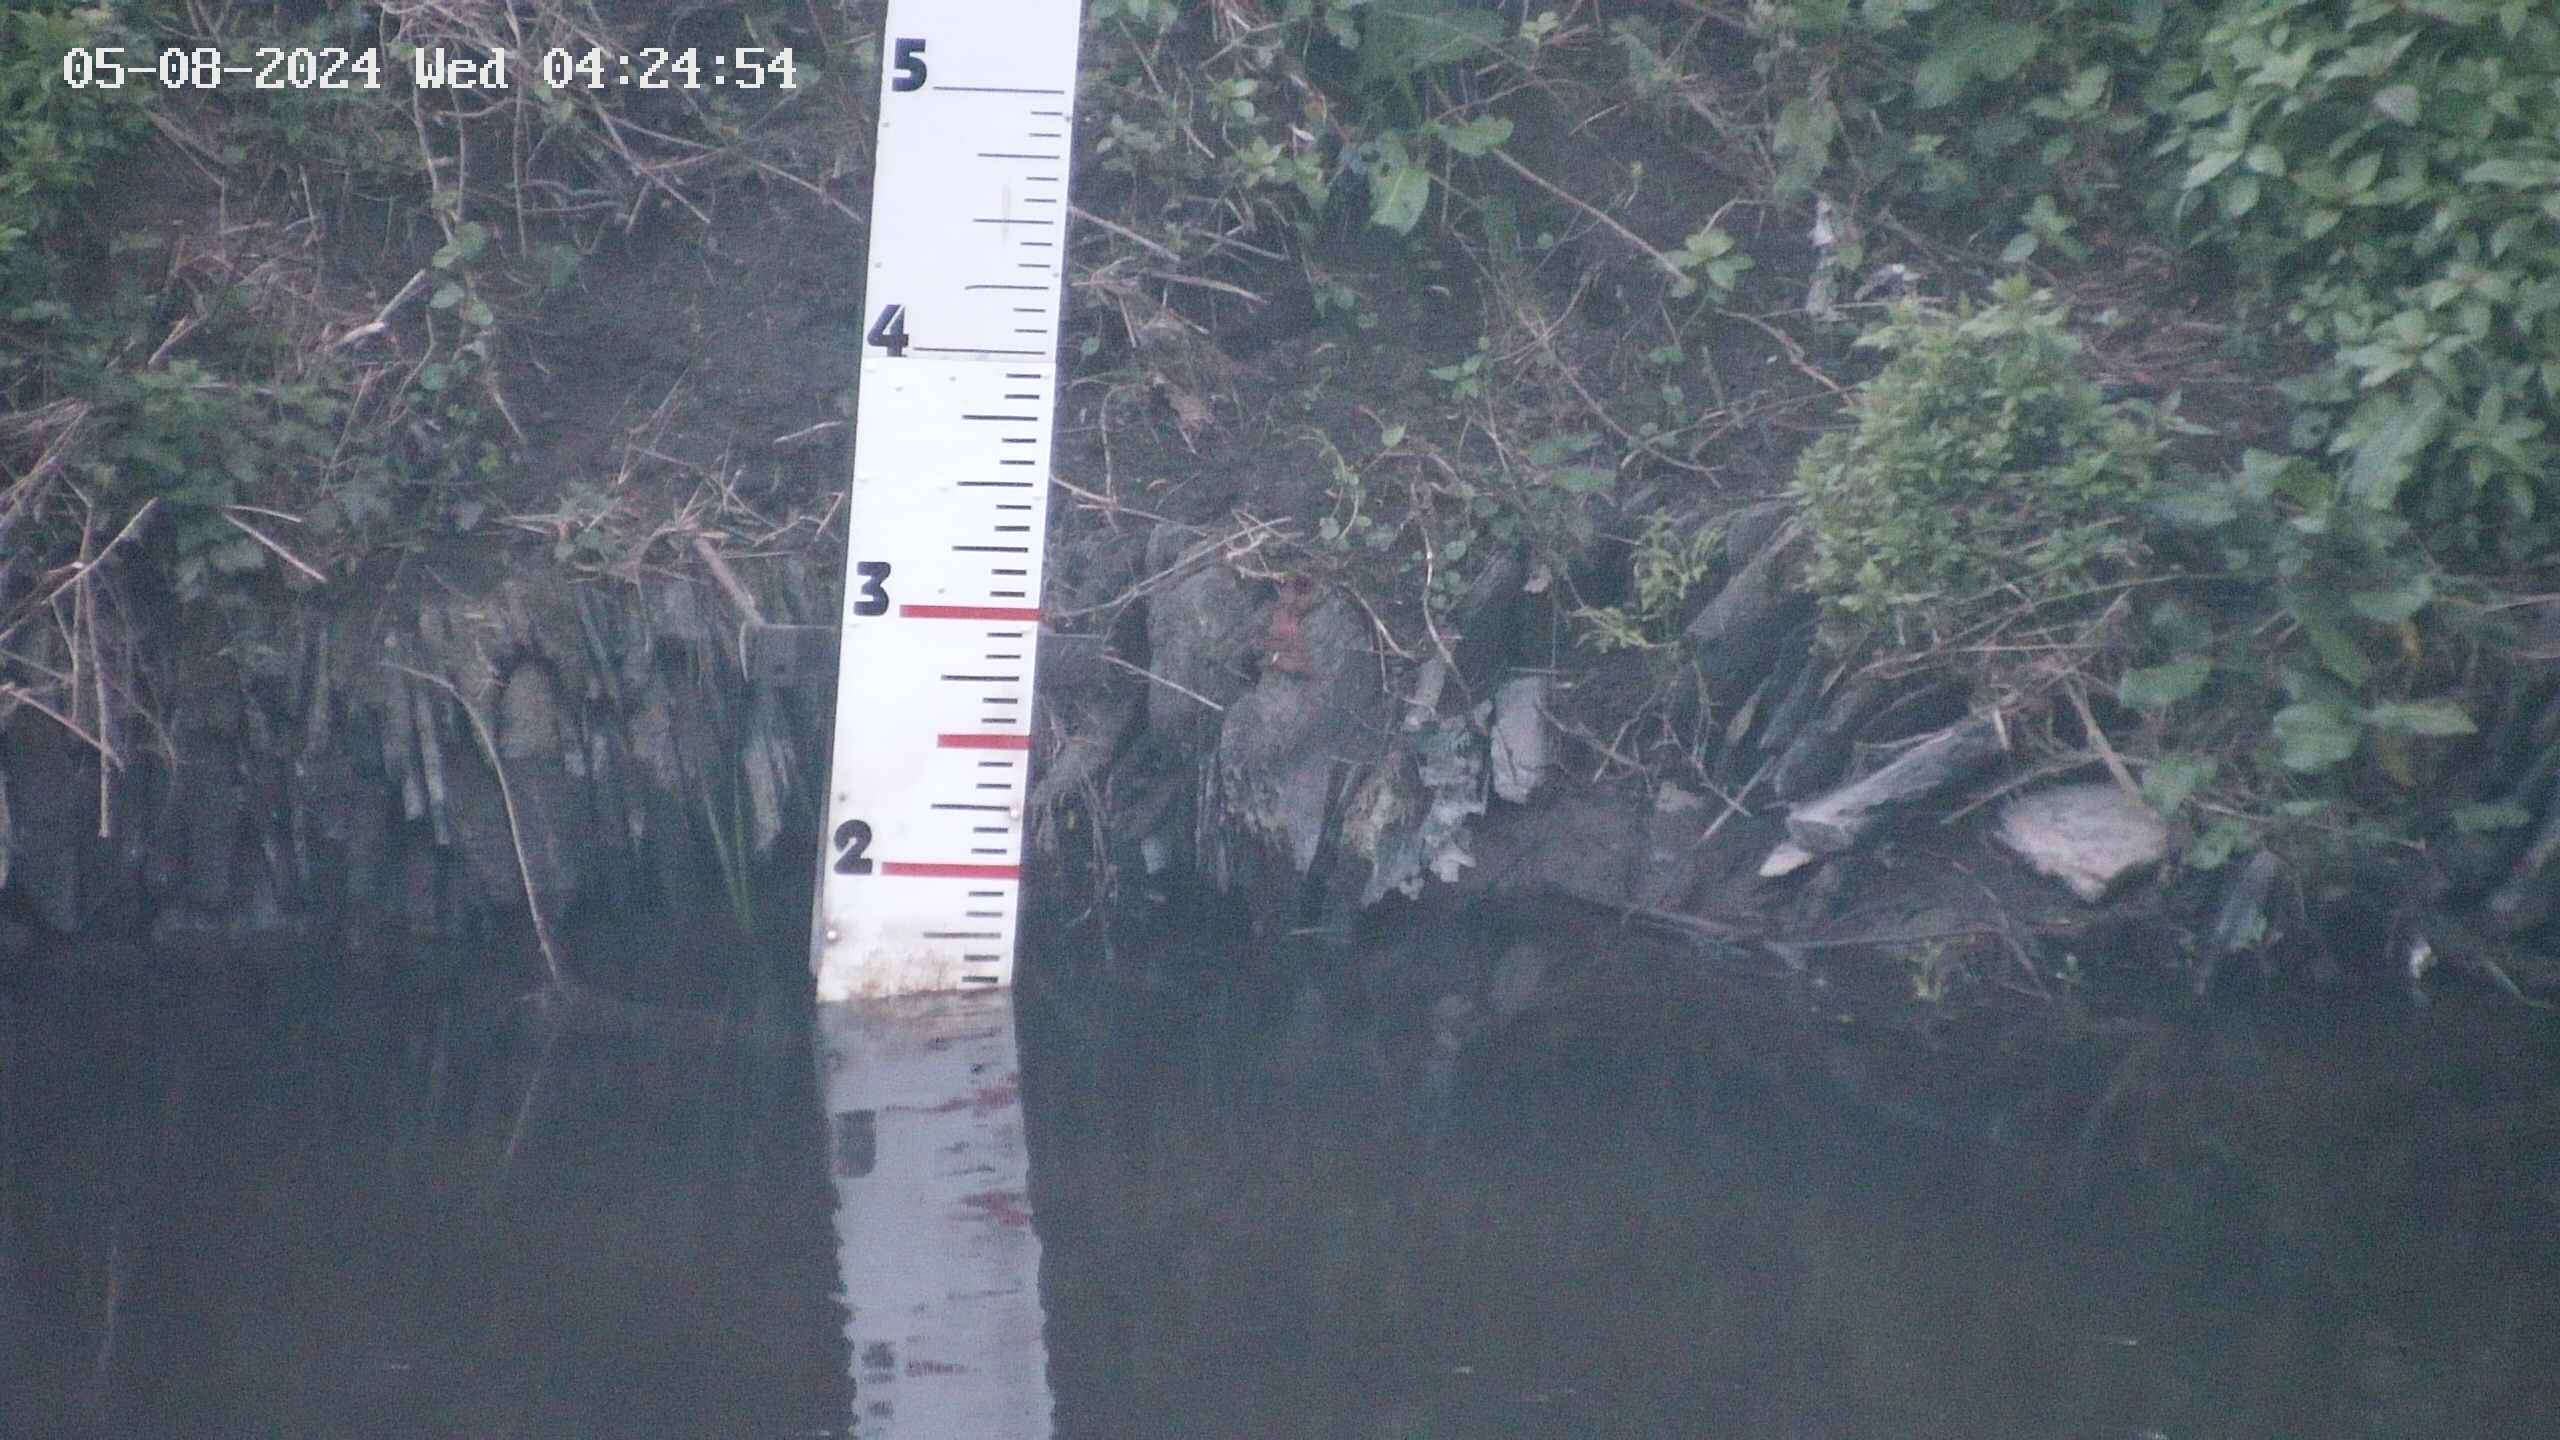 Slaney online river gauge cam